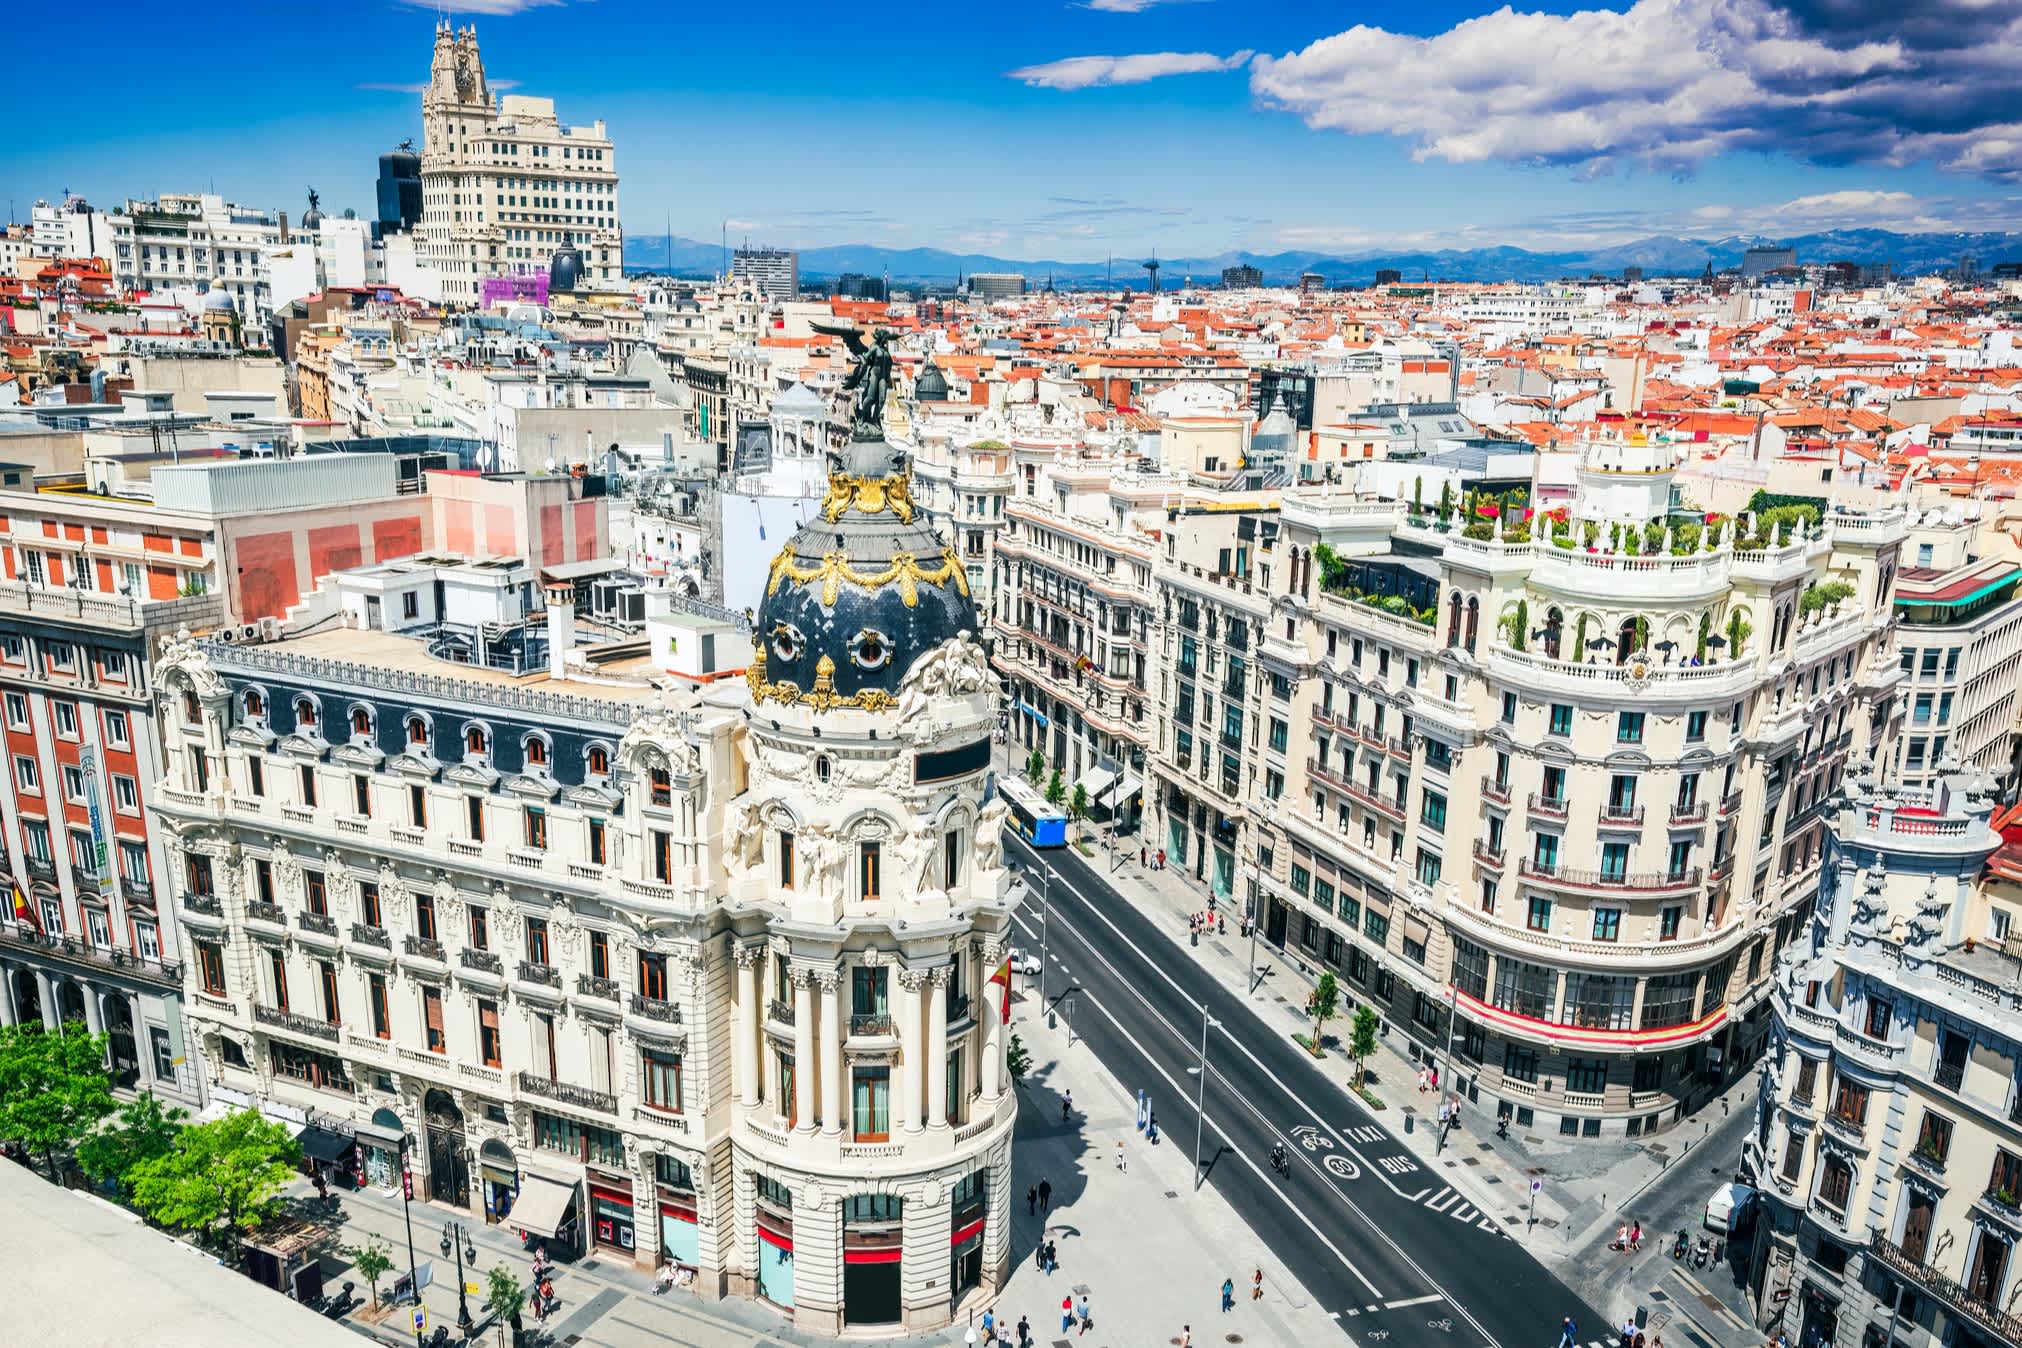 Panoramablick auf die Häuserdächer und historischen Gebäude Madrids.